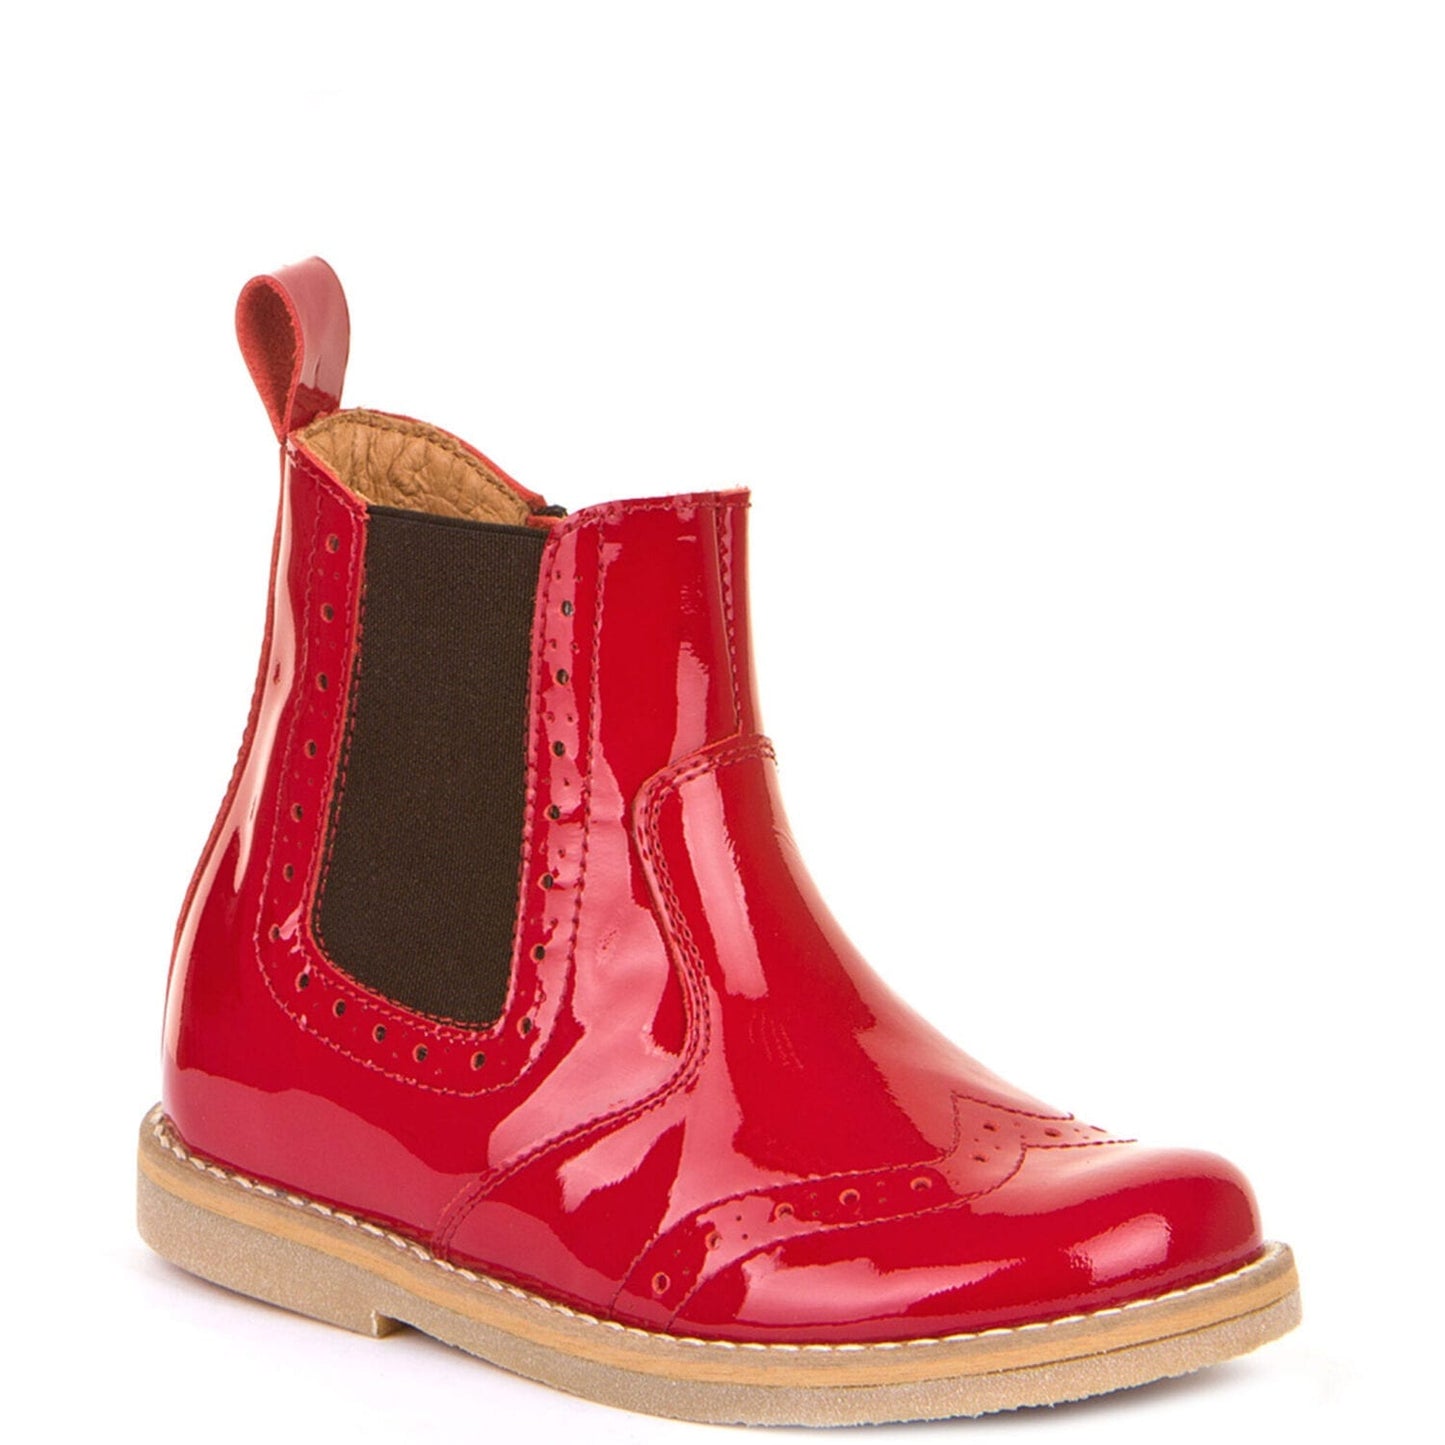 Froddo | Chelys | G3160100-10 | Girls Chelsea Boot | Red Patent